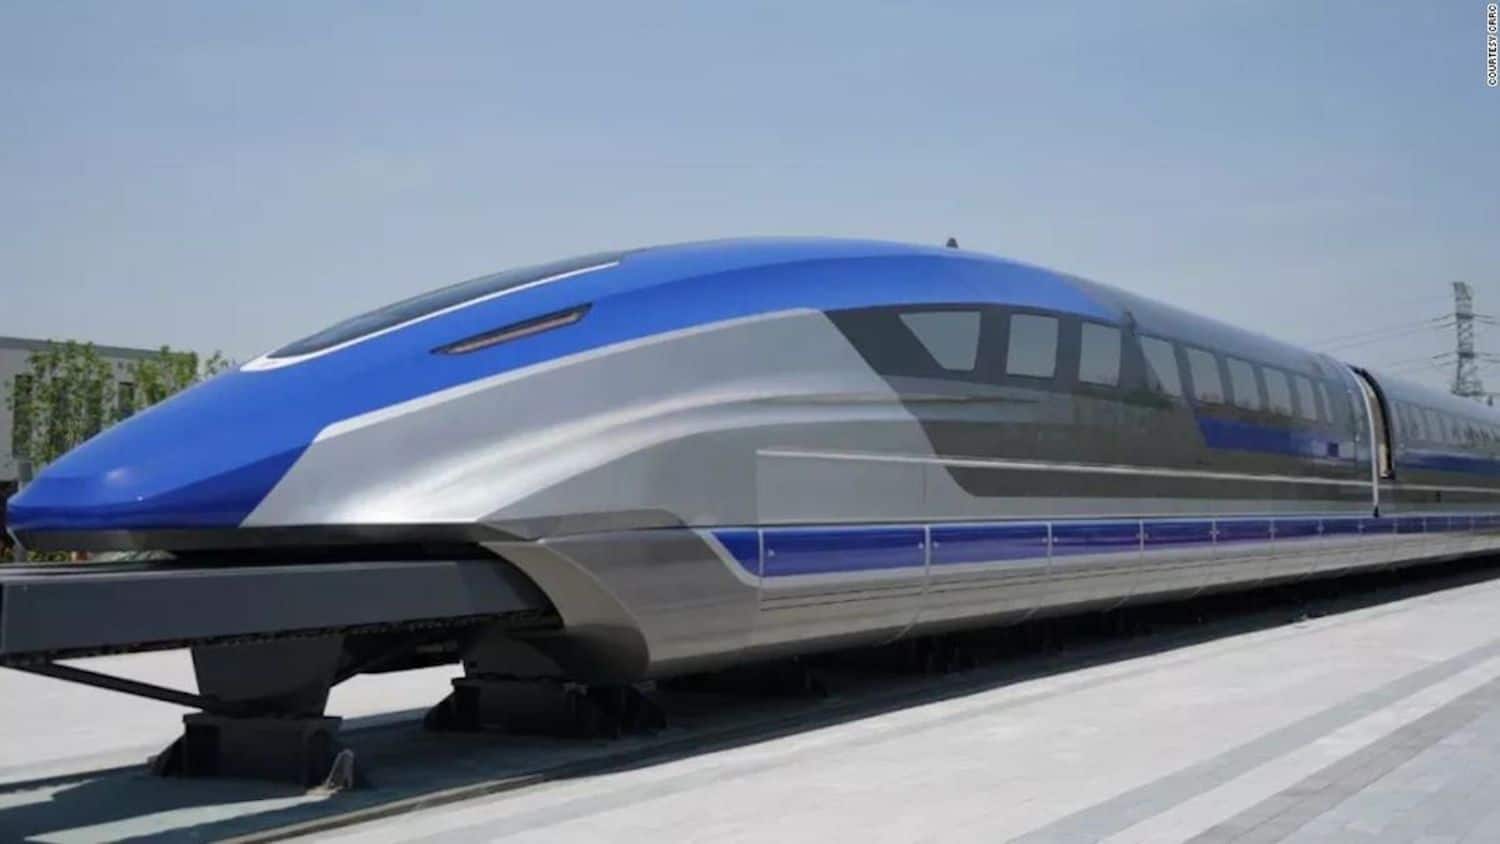 Le CRRC de Chine présente son nouveau train capable de se déplacer à près de 600km/h.